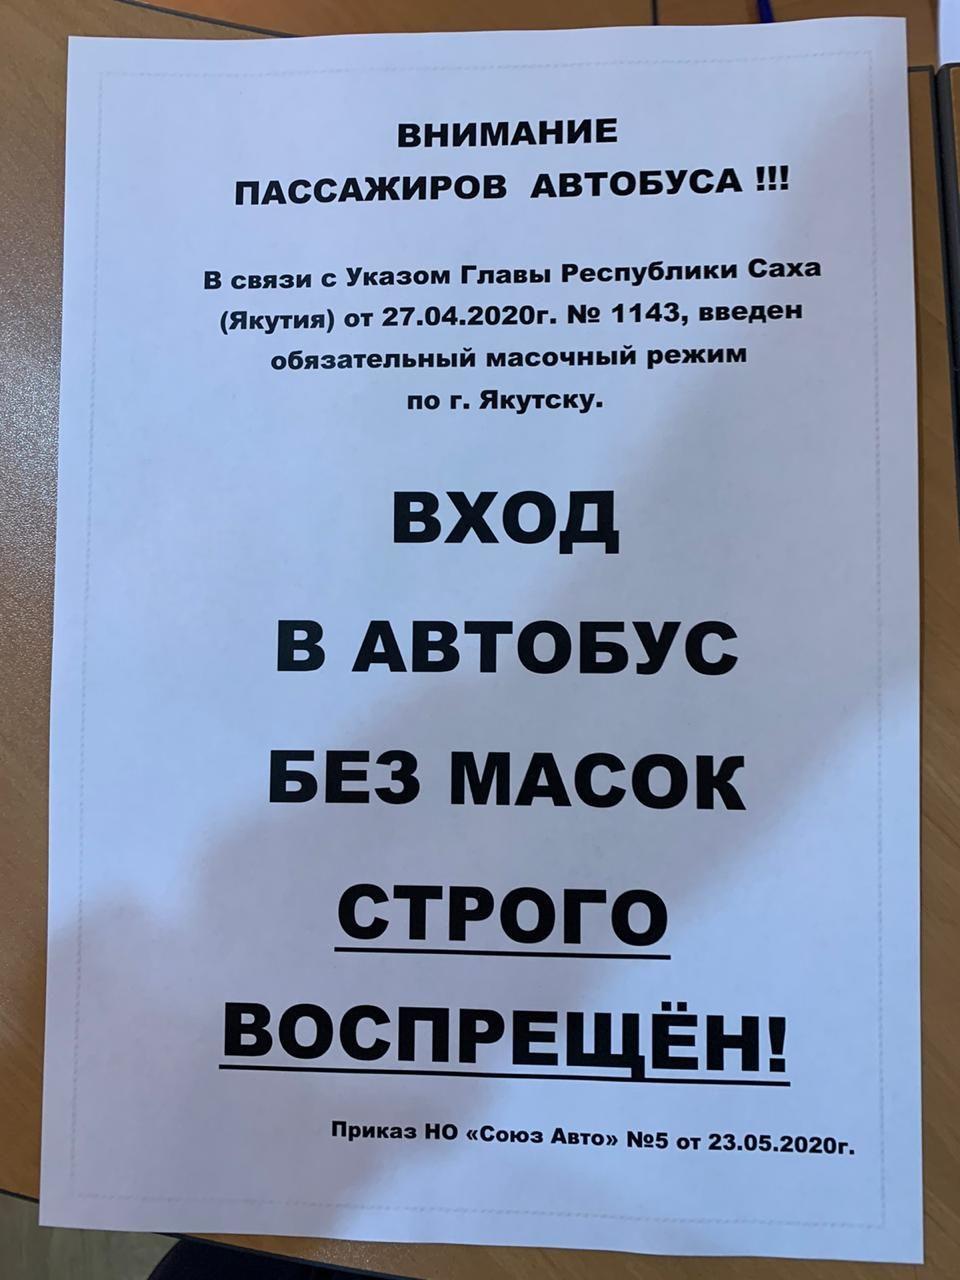 Фотофакт: В Якутске  пассажиров без масок будут высаживать из автобусов